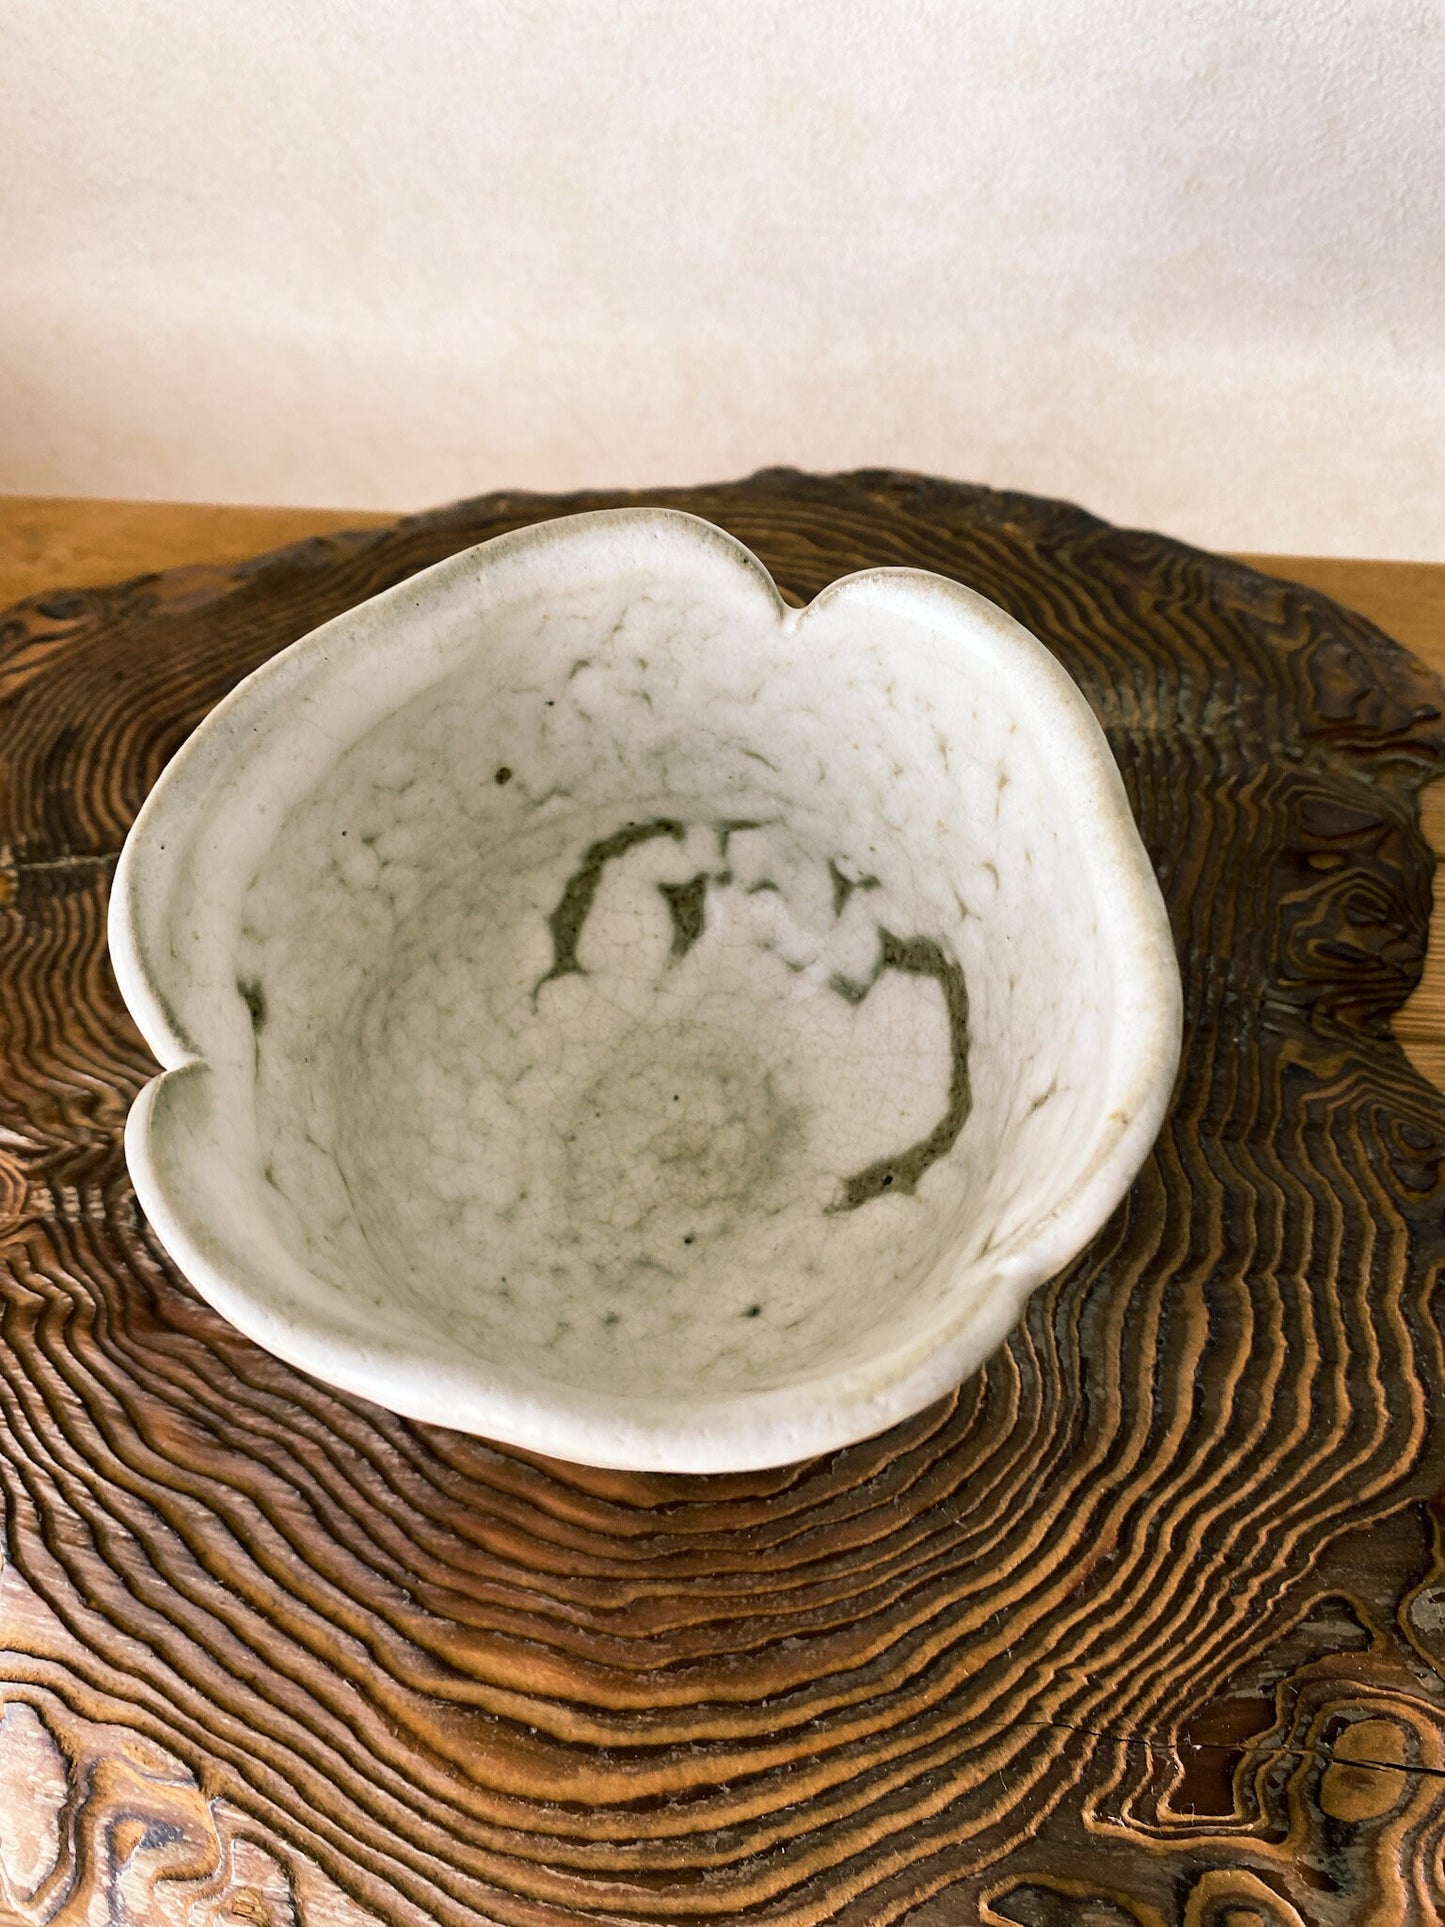 粉引 茶碗　Japanese Ceramic Saucer, Shigaraki Ware, Kohiki, Size 4.3" diameter 3.35" height